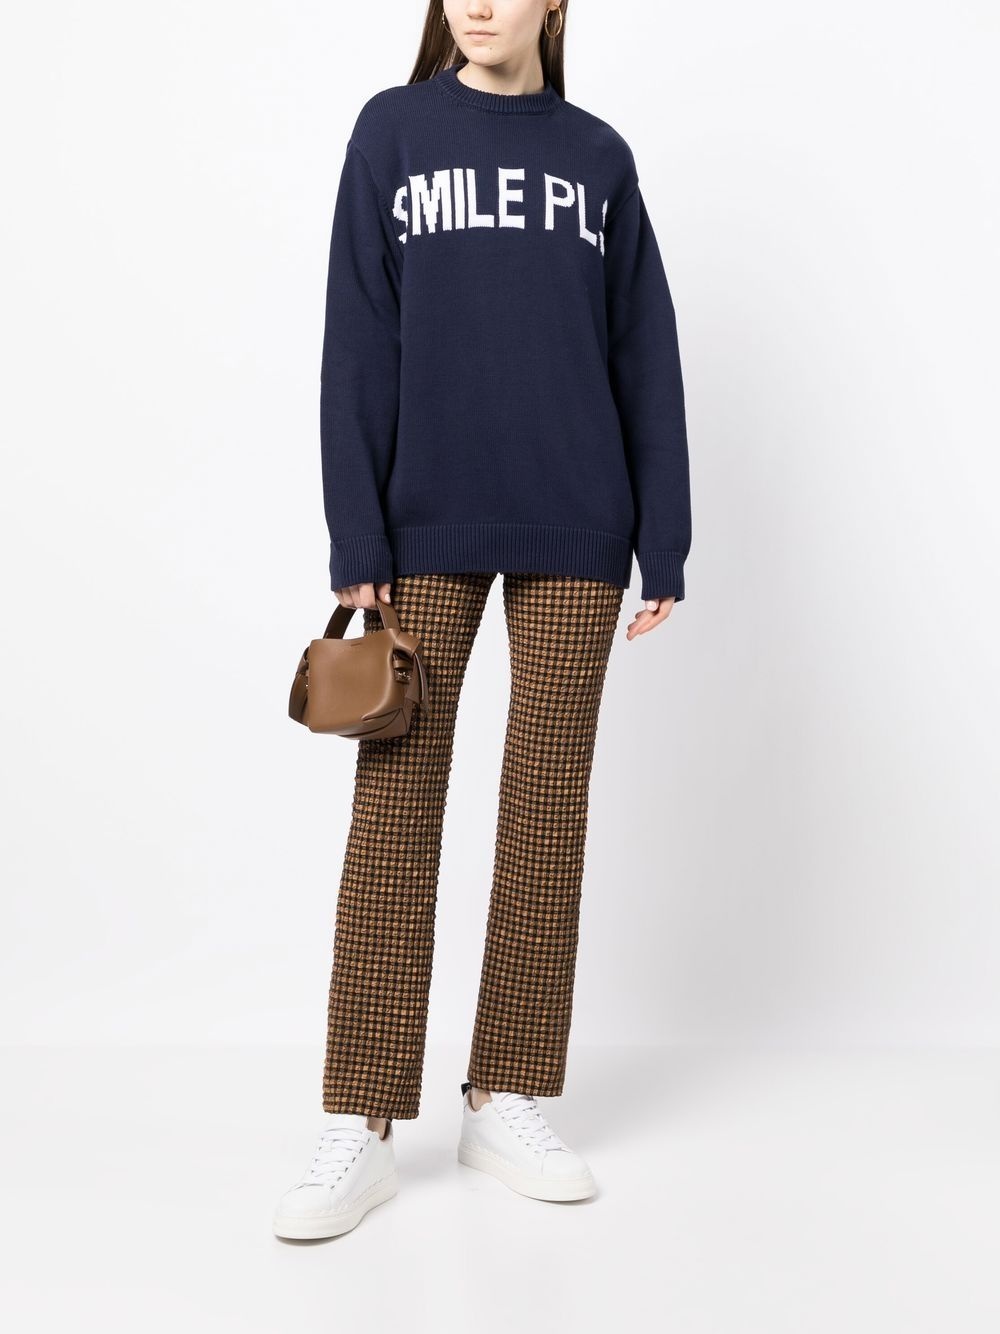 Smilepls intarsia-knit jumper - 2